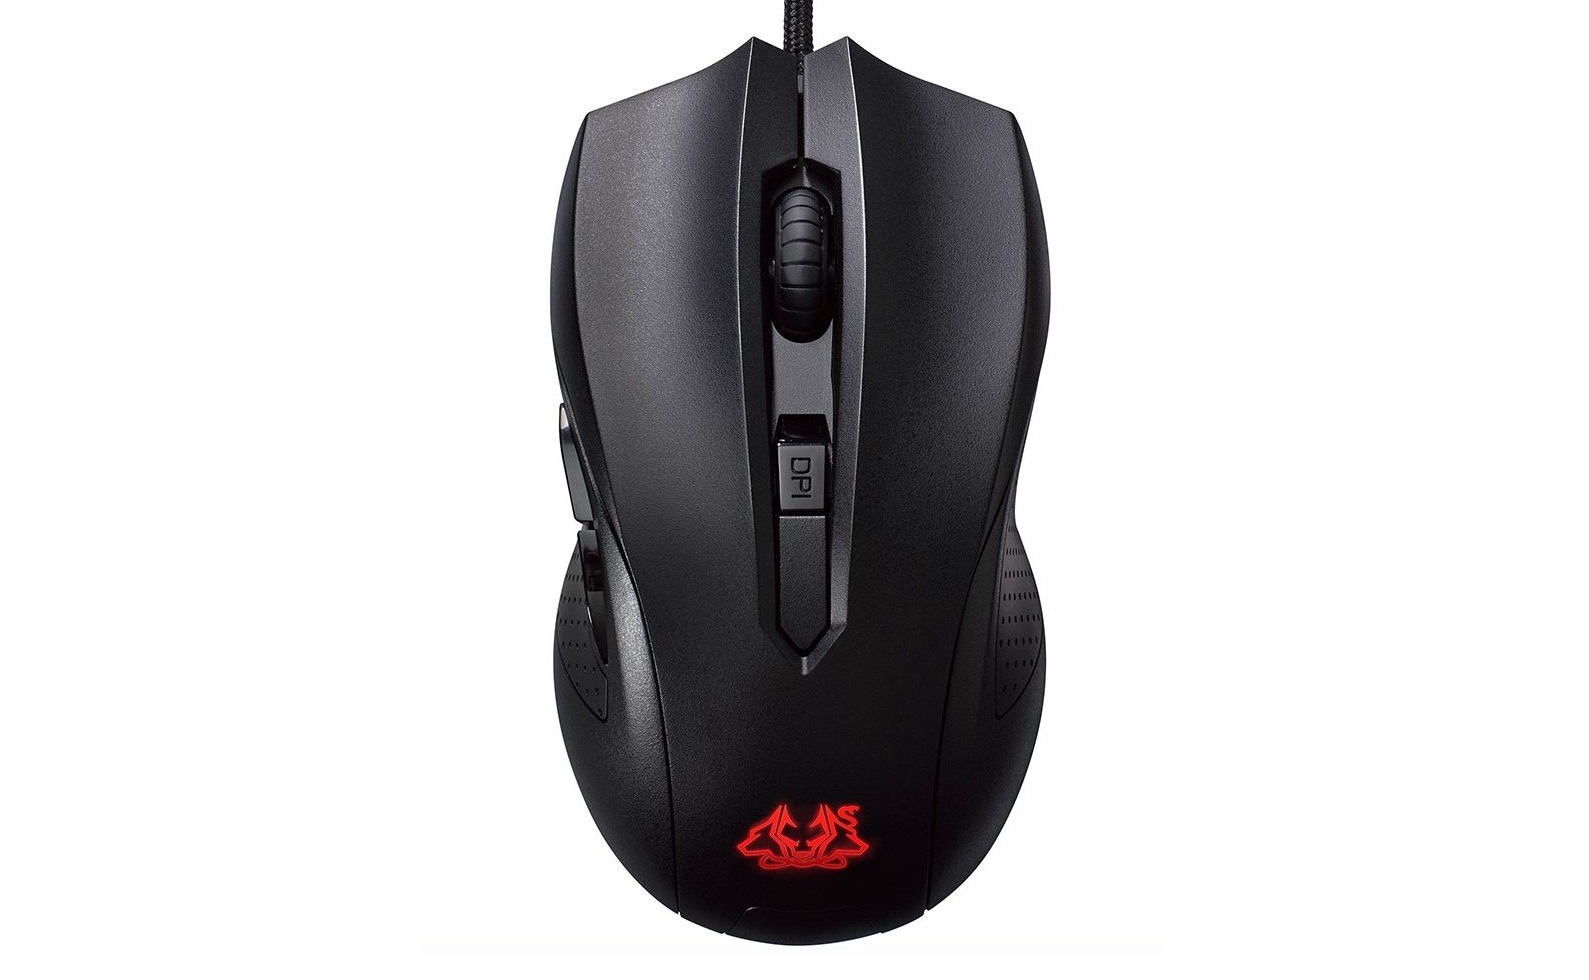 Chuột chơi game ASUS Cerberus Optical Gaming Mouse có thiết kế đối xứng tiện lợi